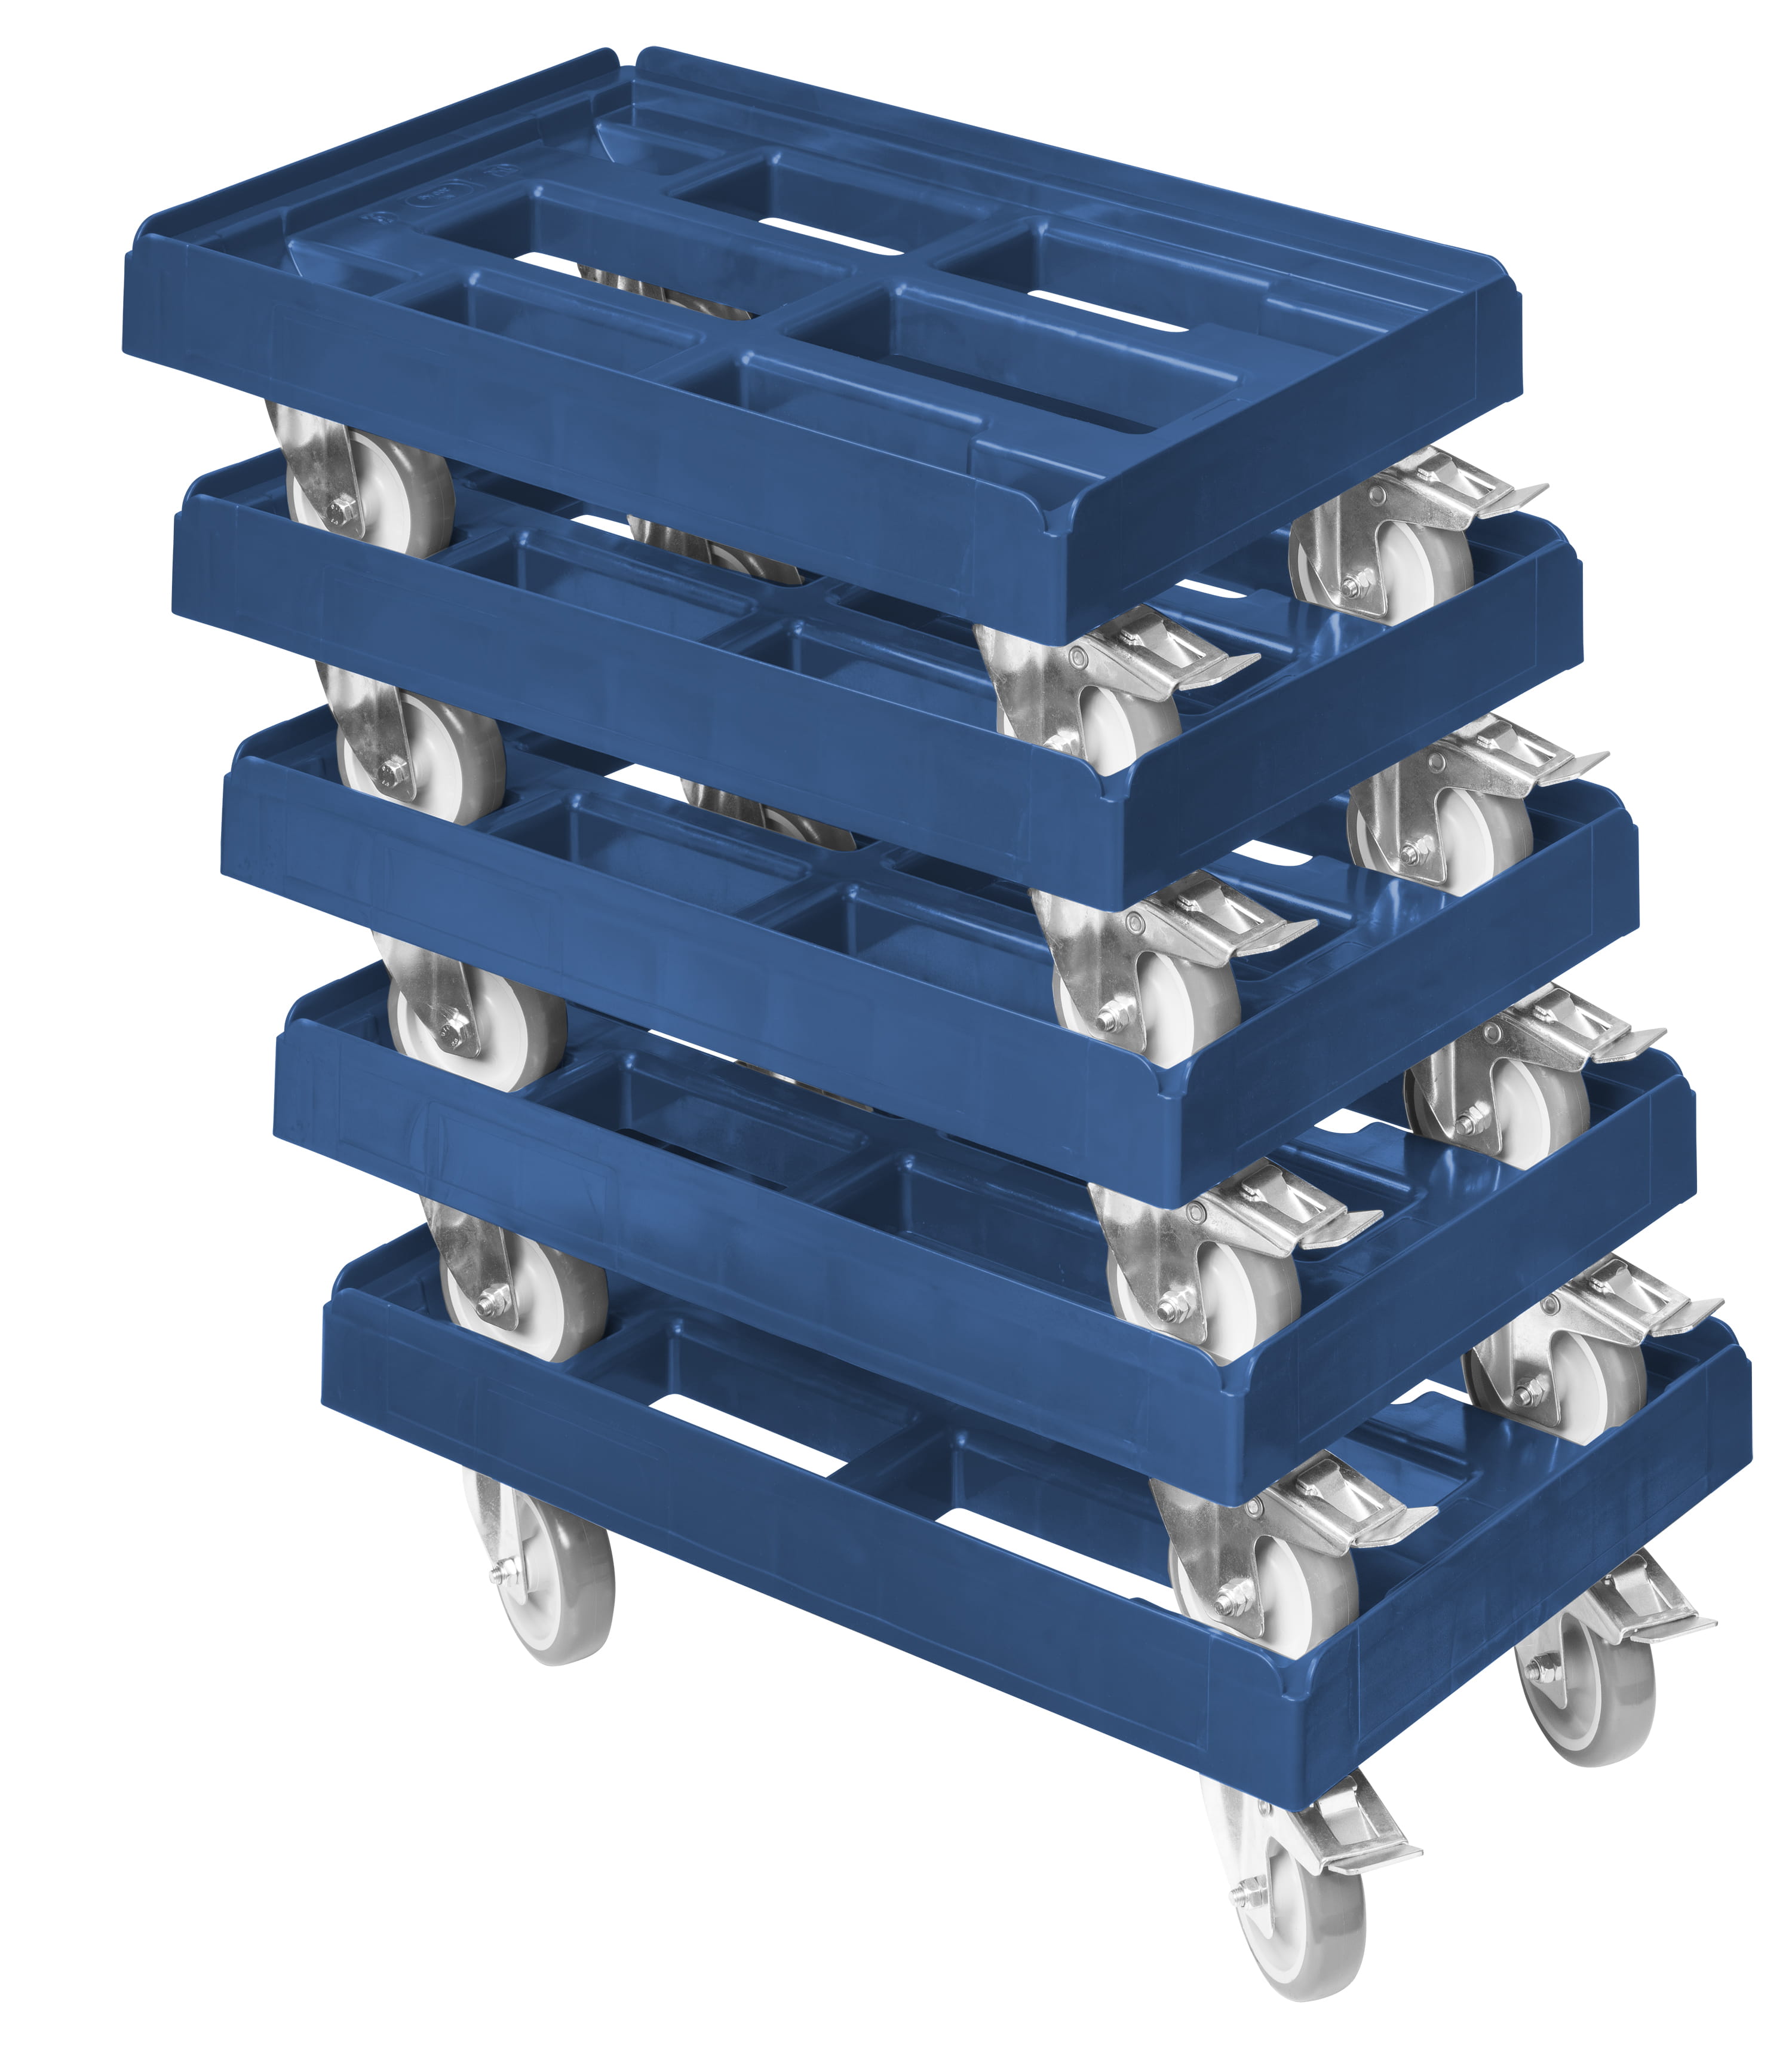 Kistenroller 600x400mm blau mit 4x Weich PU Rädern 2x Festst. Transportroller 